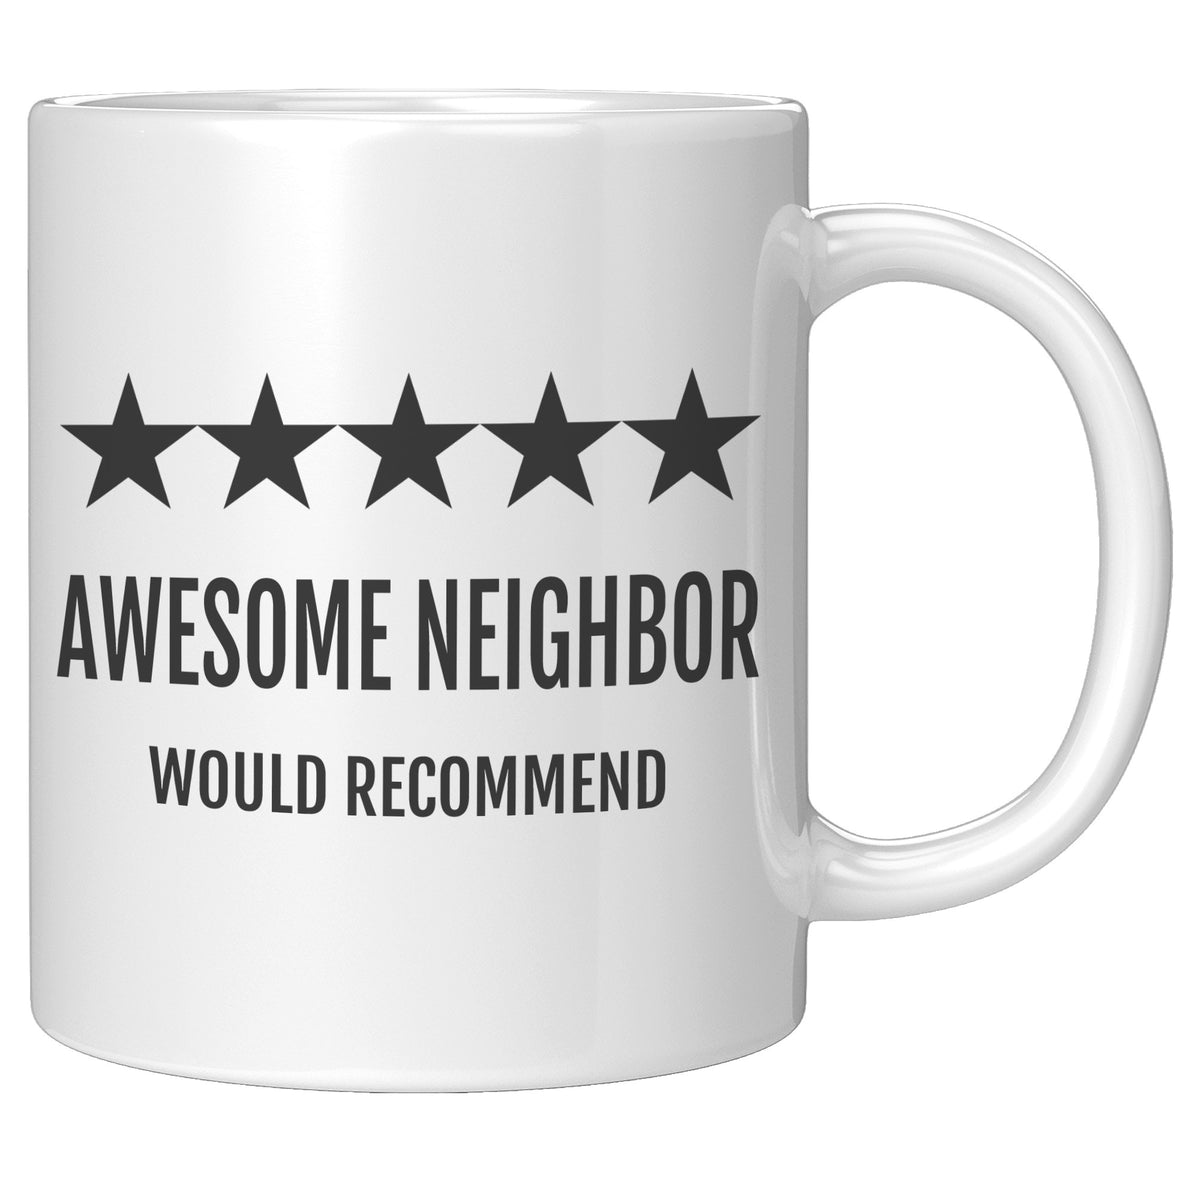 Neighbor Gift - Awesome Neighbor Mug